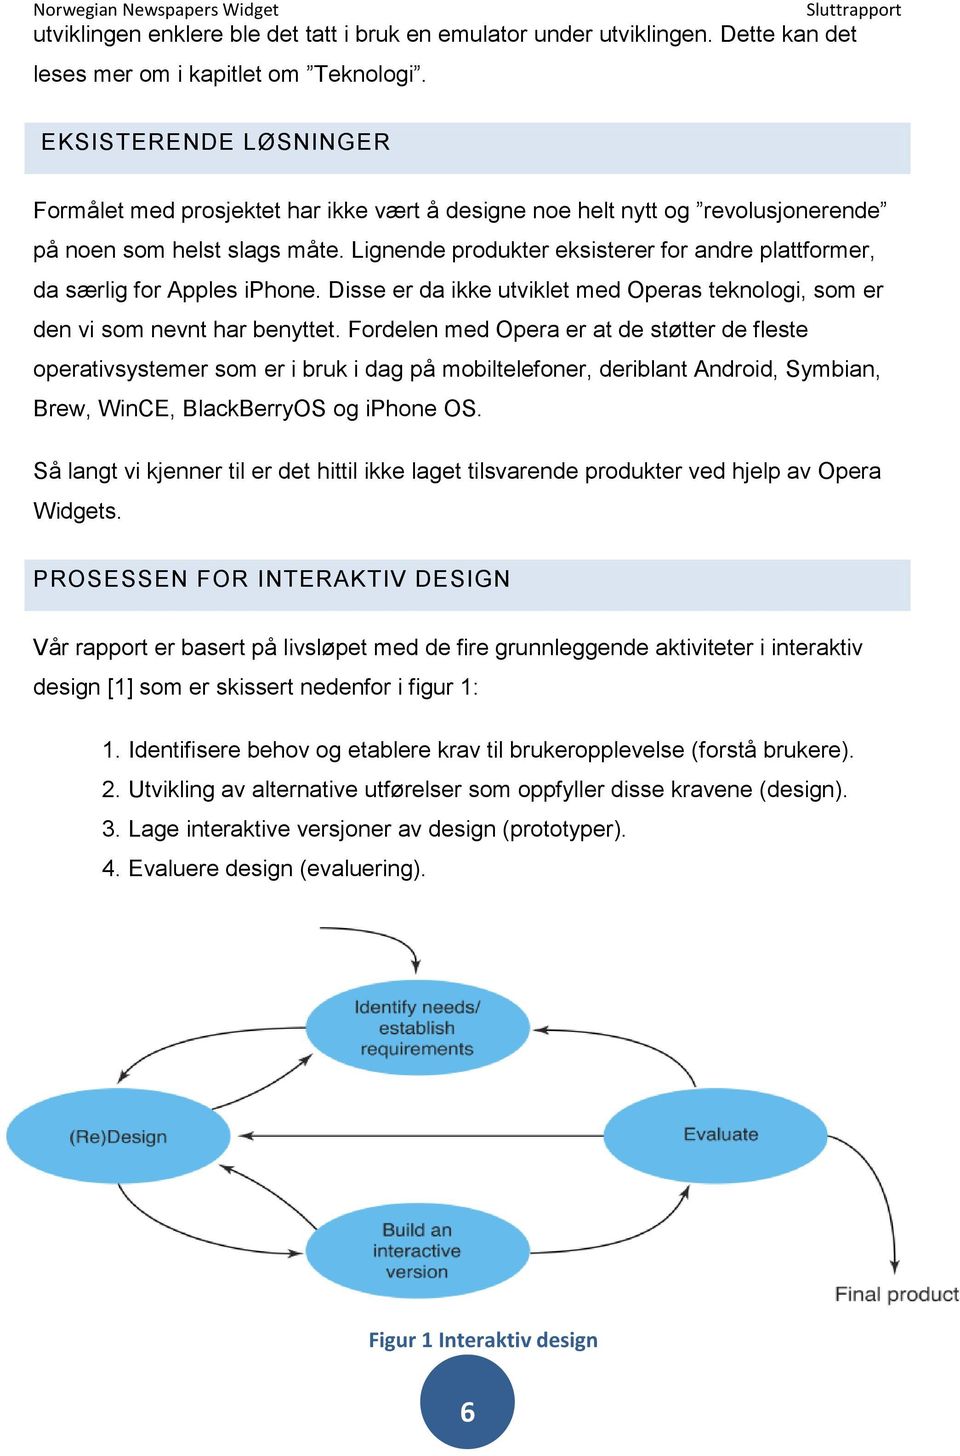 Lignende produkter eksisterer for andre plattformer, da særlig for Apples iphone. Disse er da ikke utviklet med Operas teknologi, som er den vi som nevnt har benyttet.